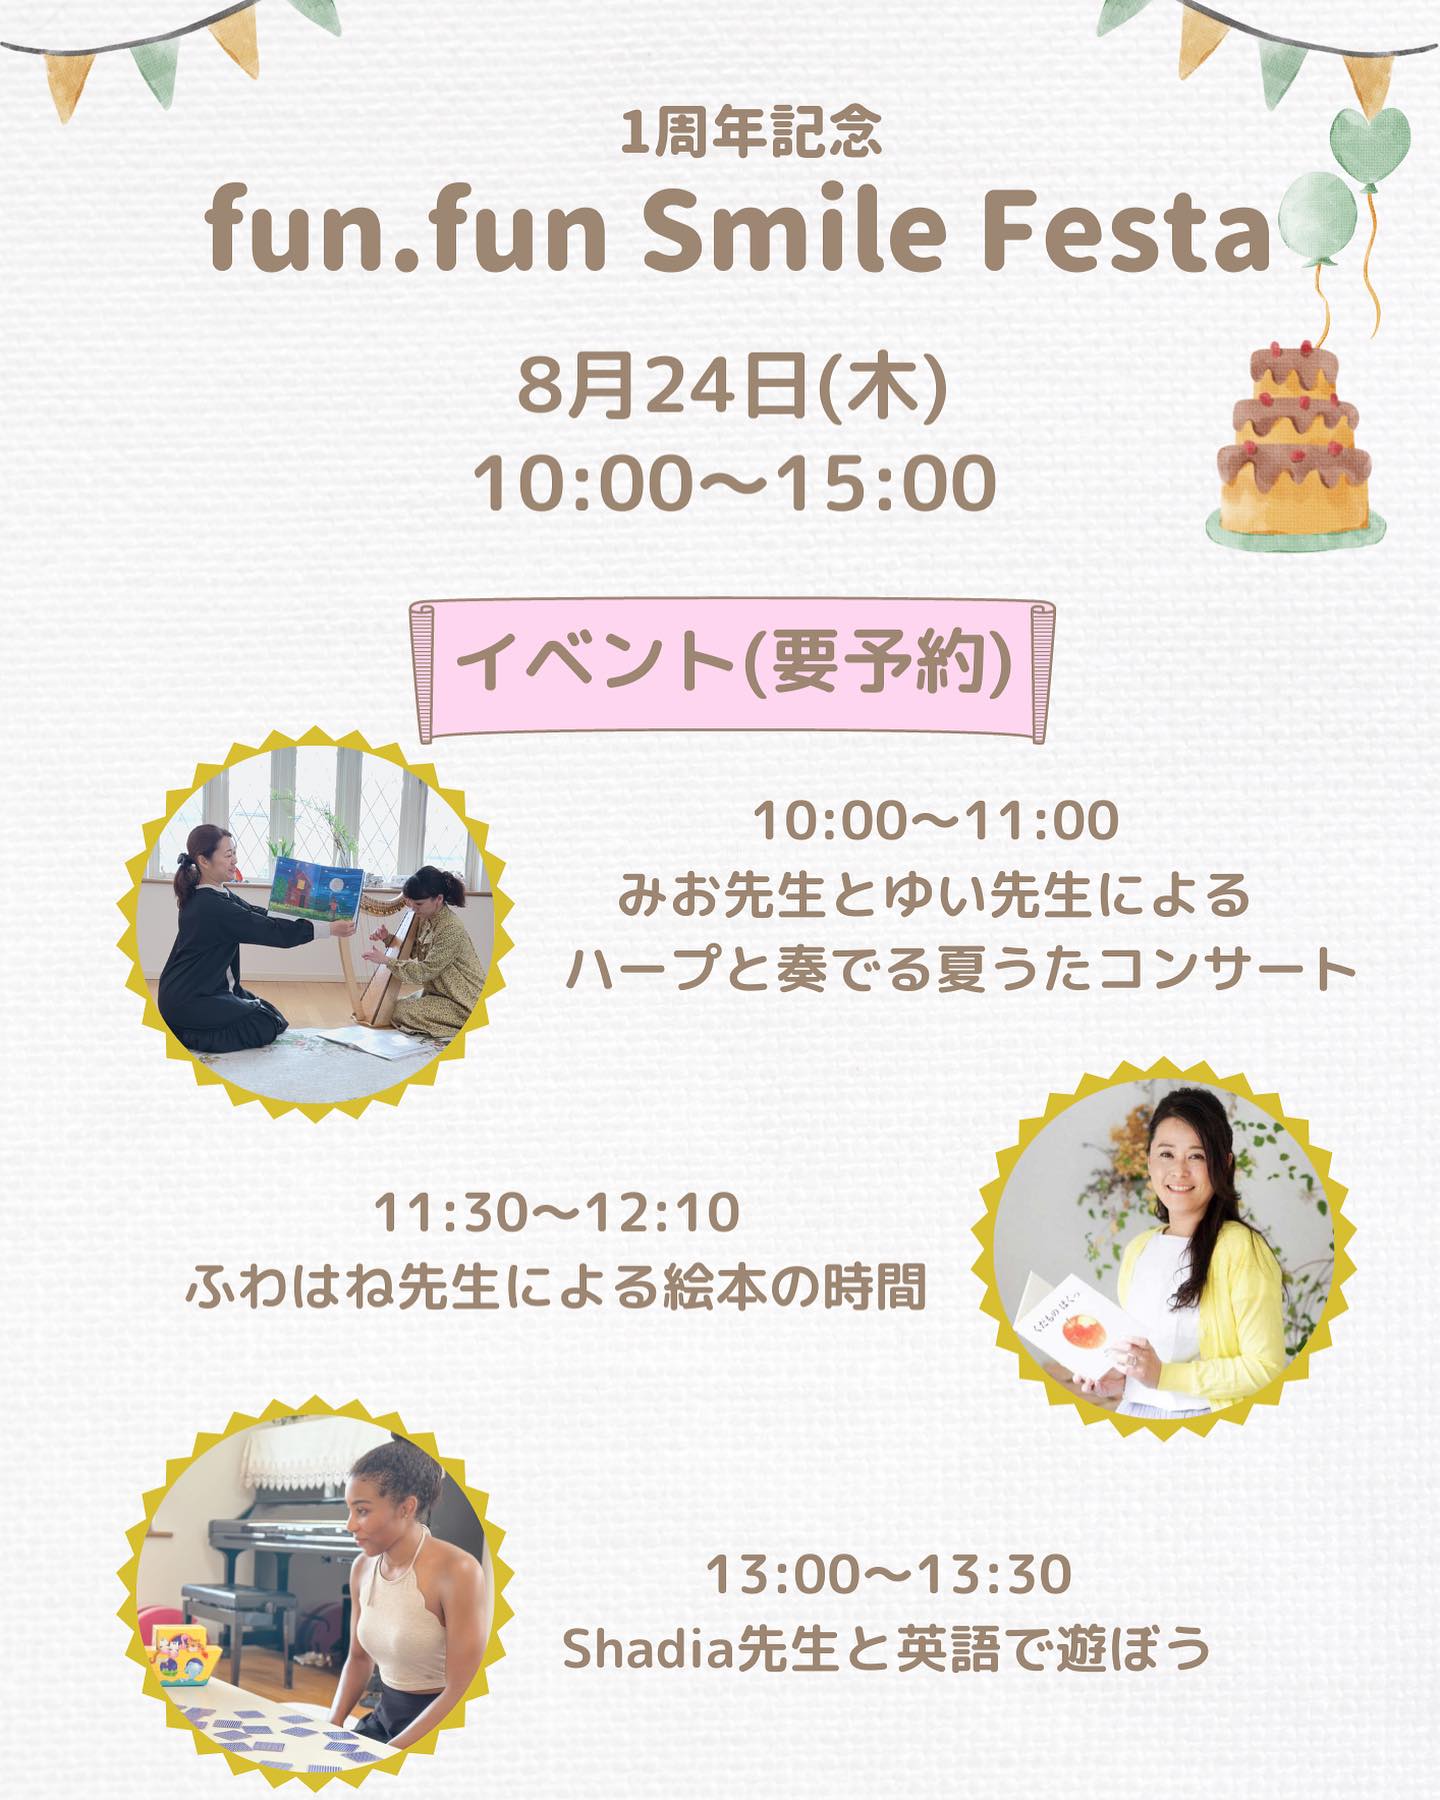 1周年記念【fun.fun place smile festa】のお知らせです